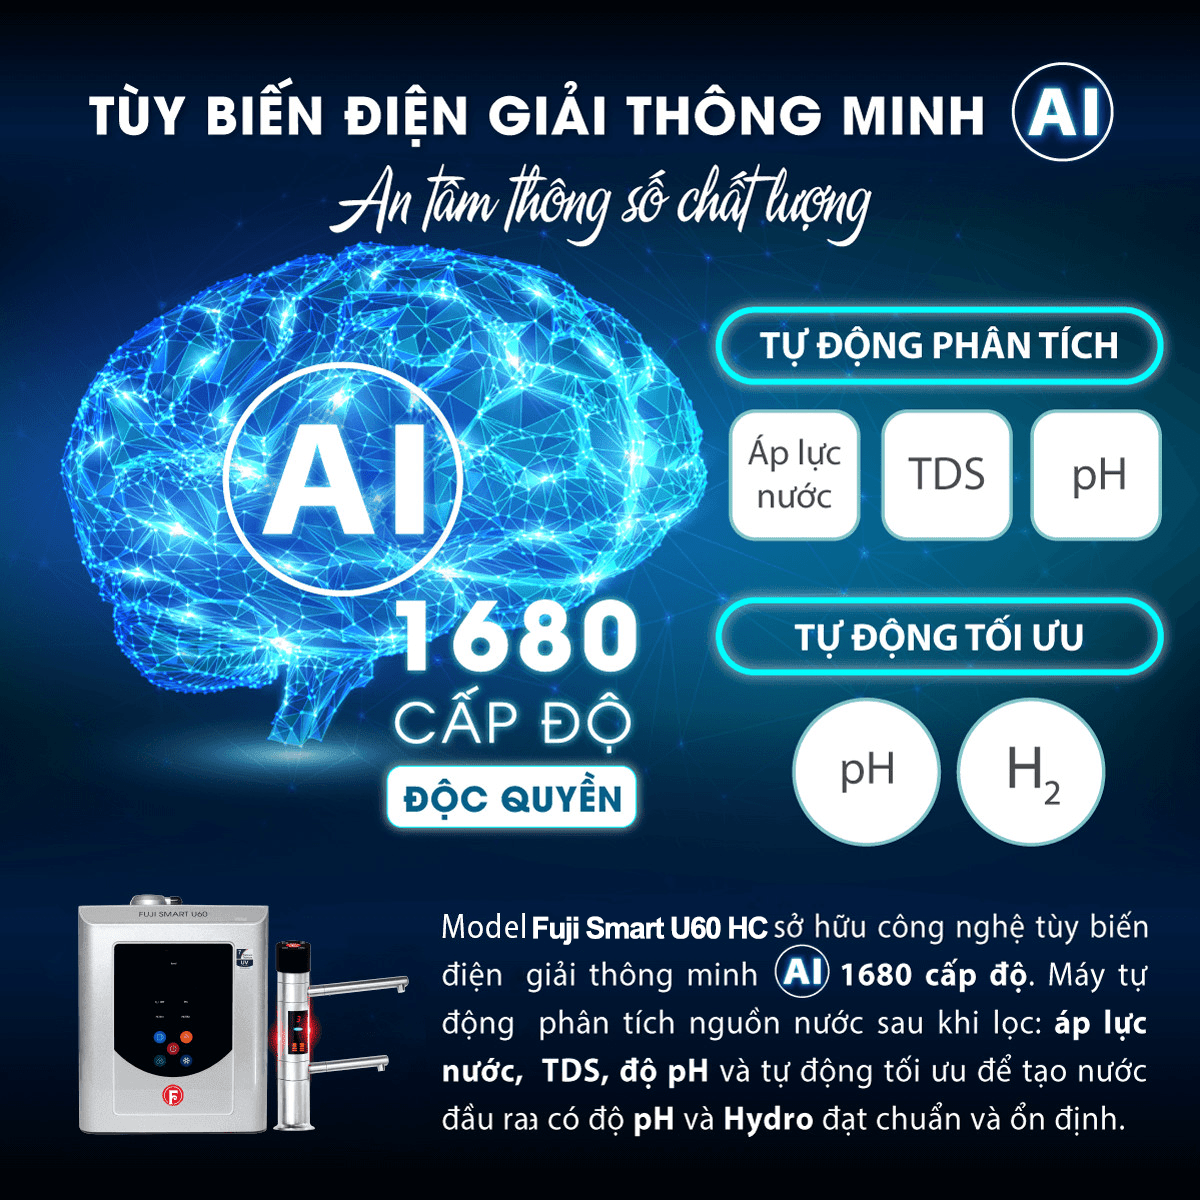 Fuji Smart U60 HC sở hữu công nghệ tùy biến điện giải thông minh AI 1680 cấp độ độc quyền